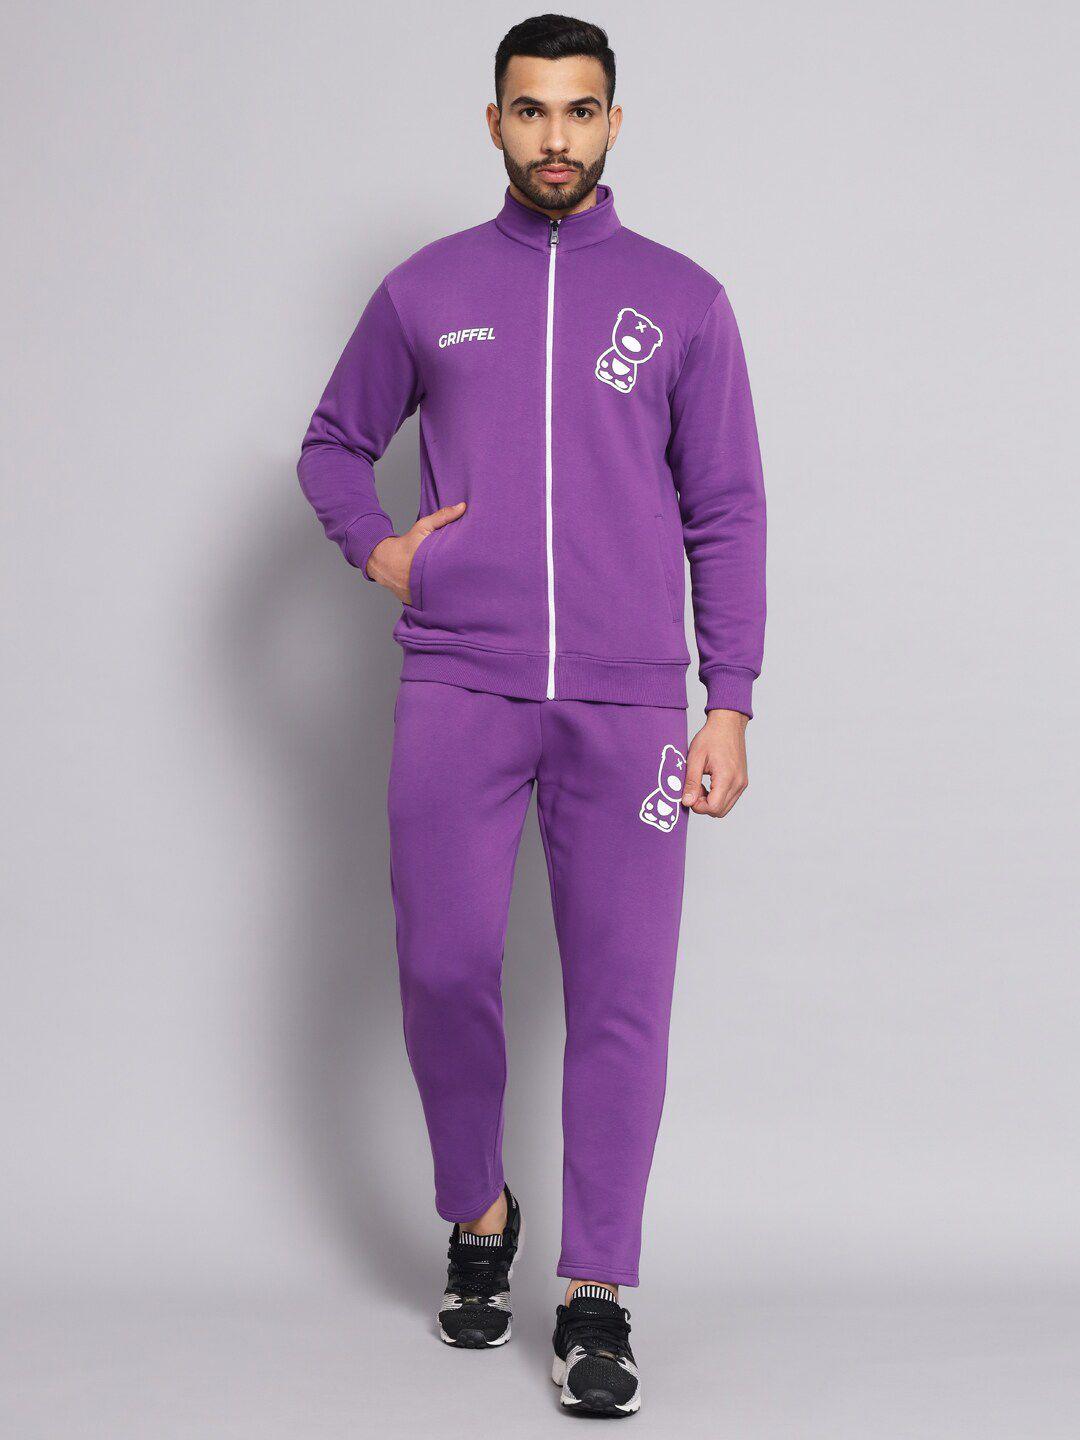 griffel men purple printed cotton sports tracksuit